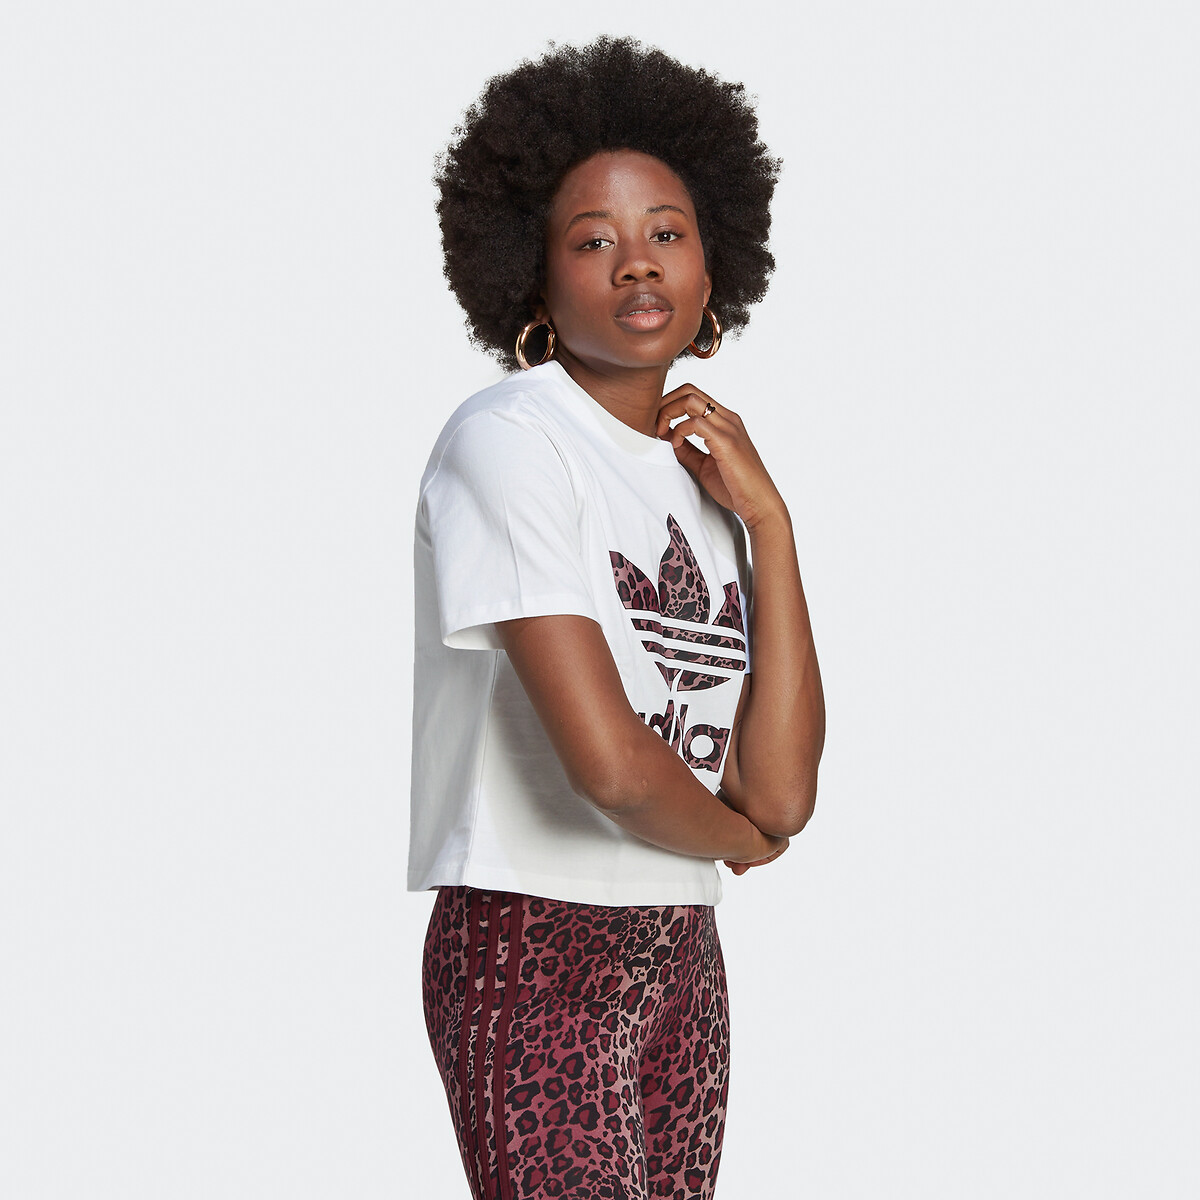 Camiseta graphics logo con motivo de leopardo blanco Adidas Originals | La